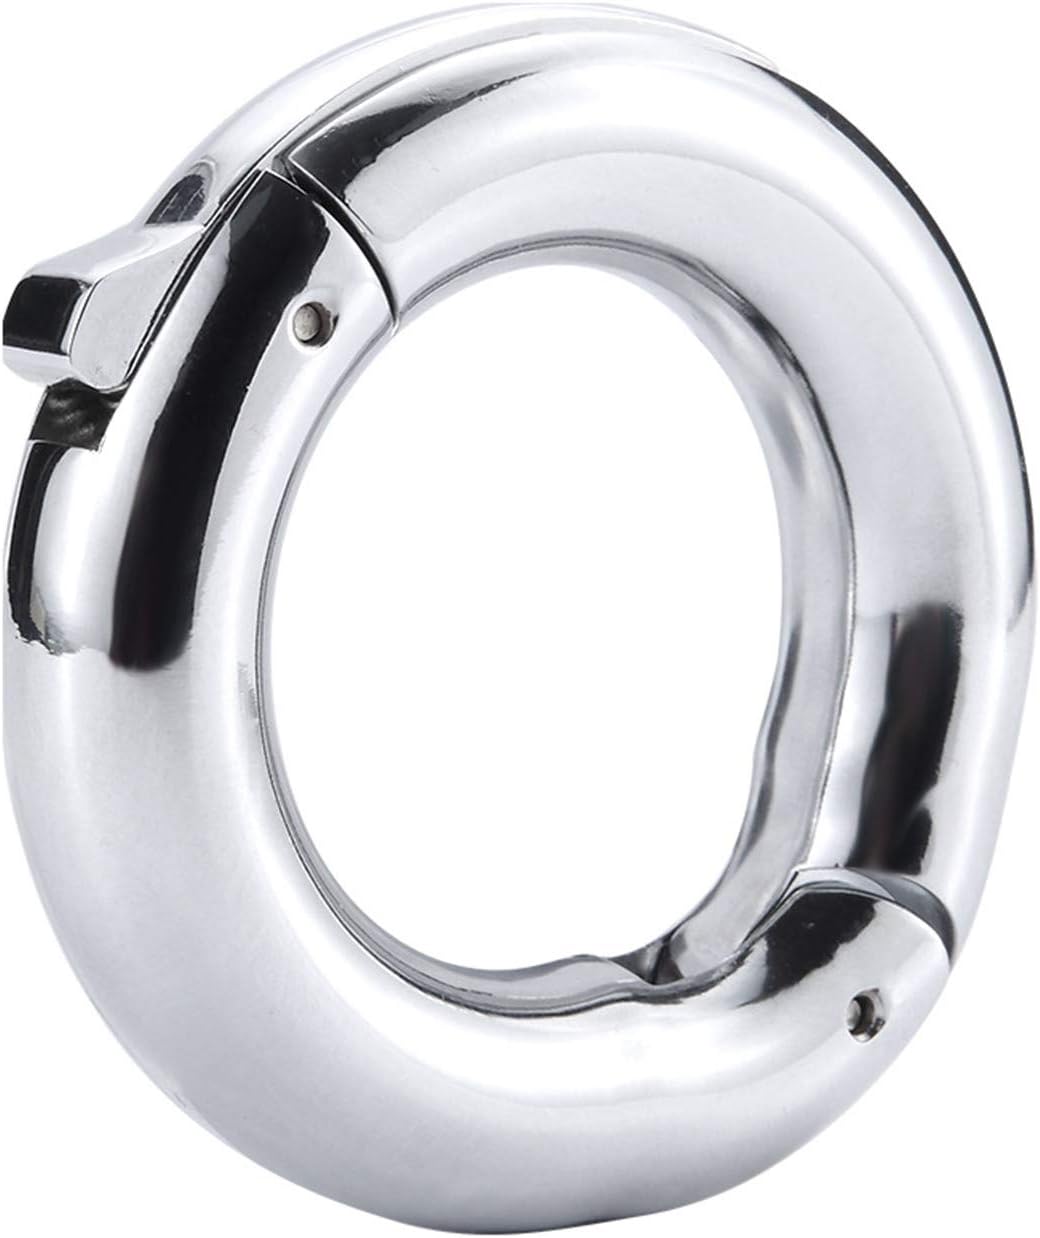 Testicle rings for men penis ring adjustable diameter 40-50 mm 